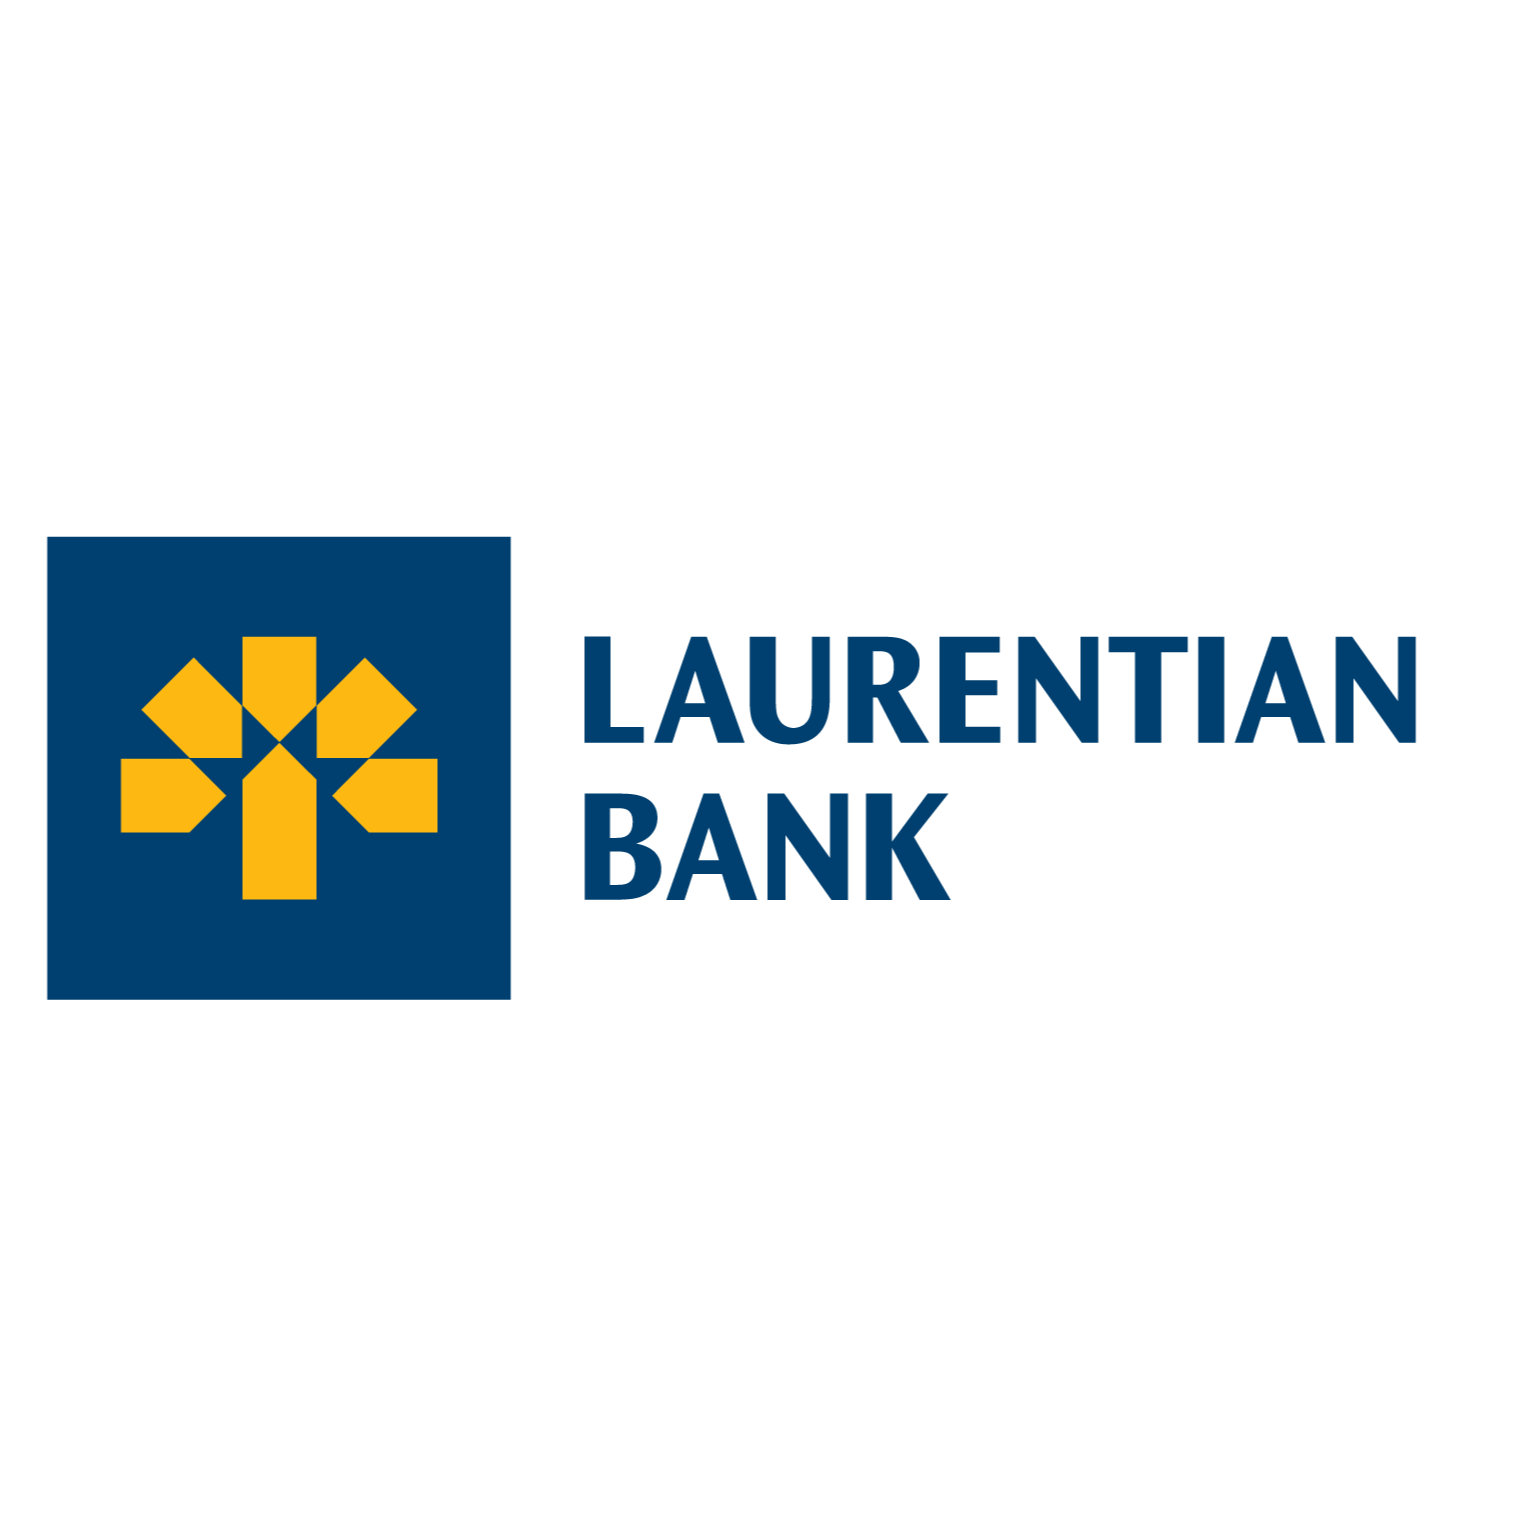 Laurentian Bank of Canada's logo